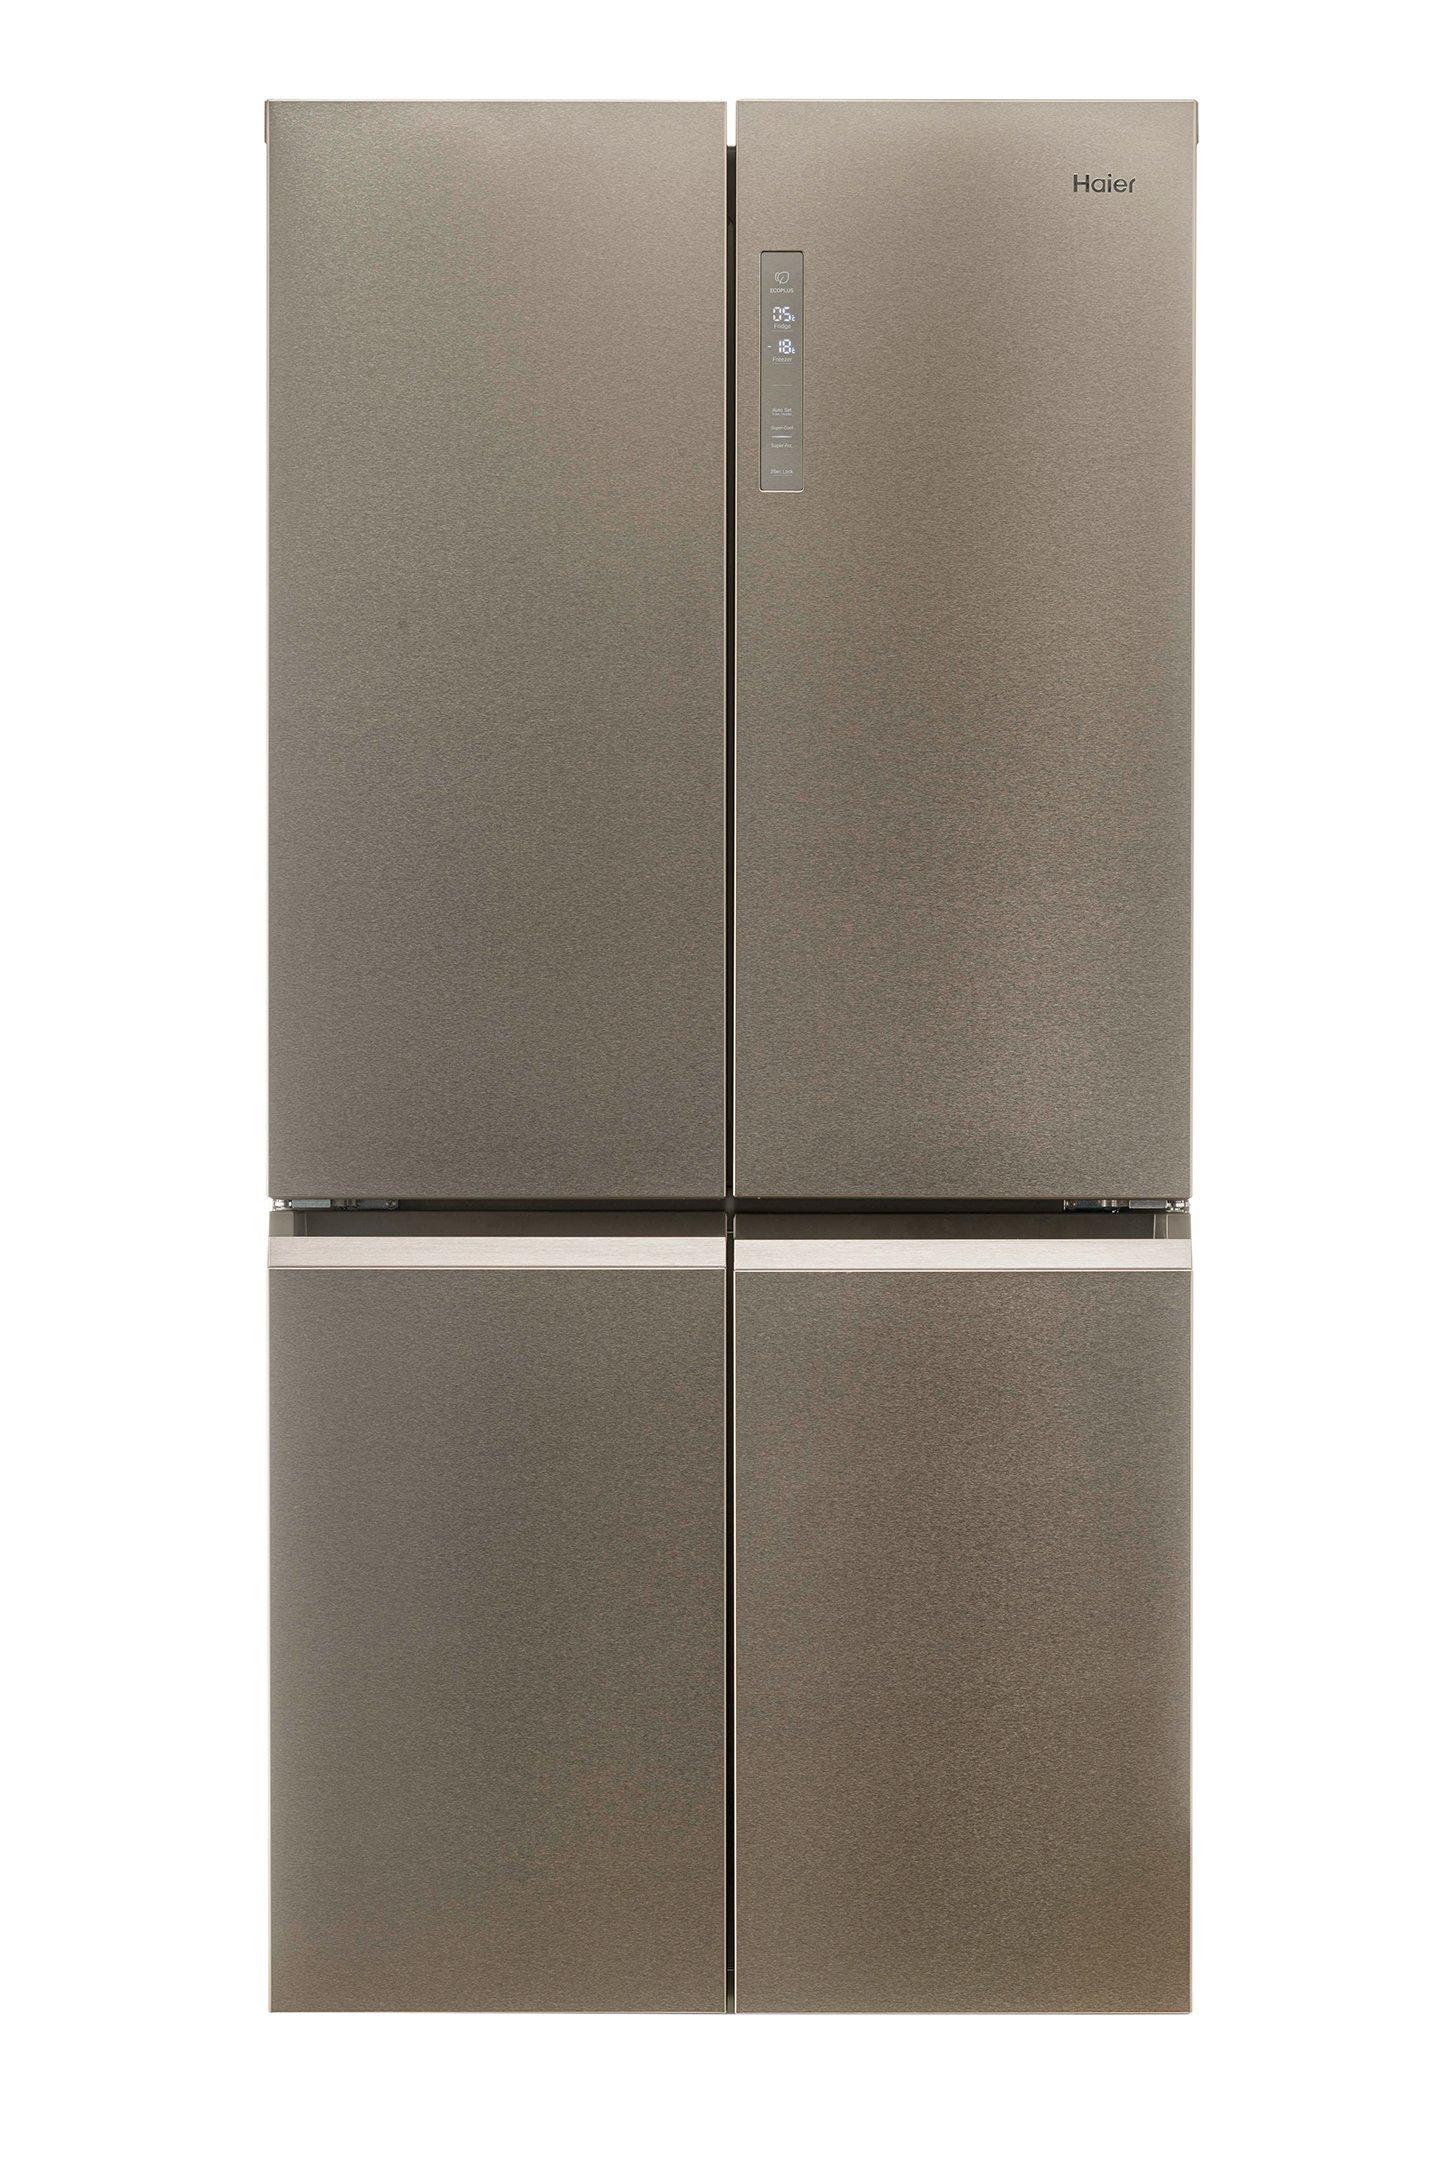 Haier SBS 4-Door Refrigerator 14.9Cu.ft, Freezer 5.7Cu.ft, Twin 